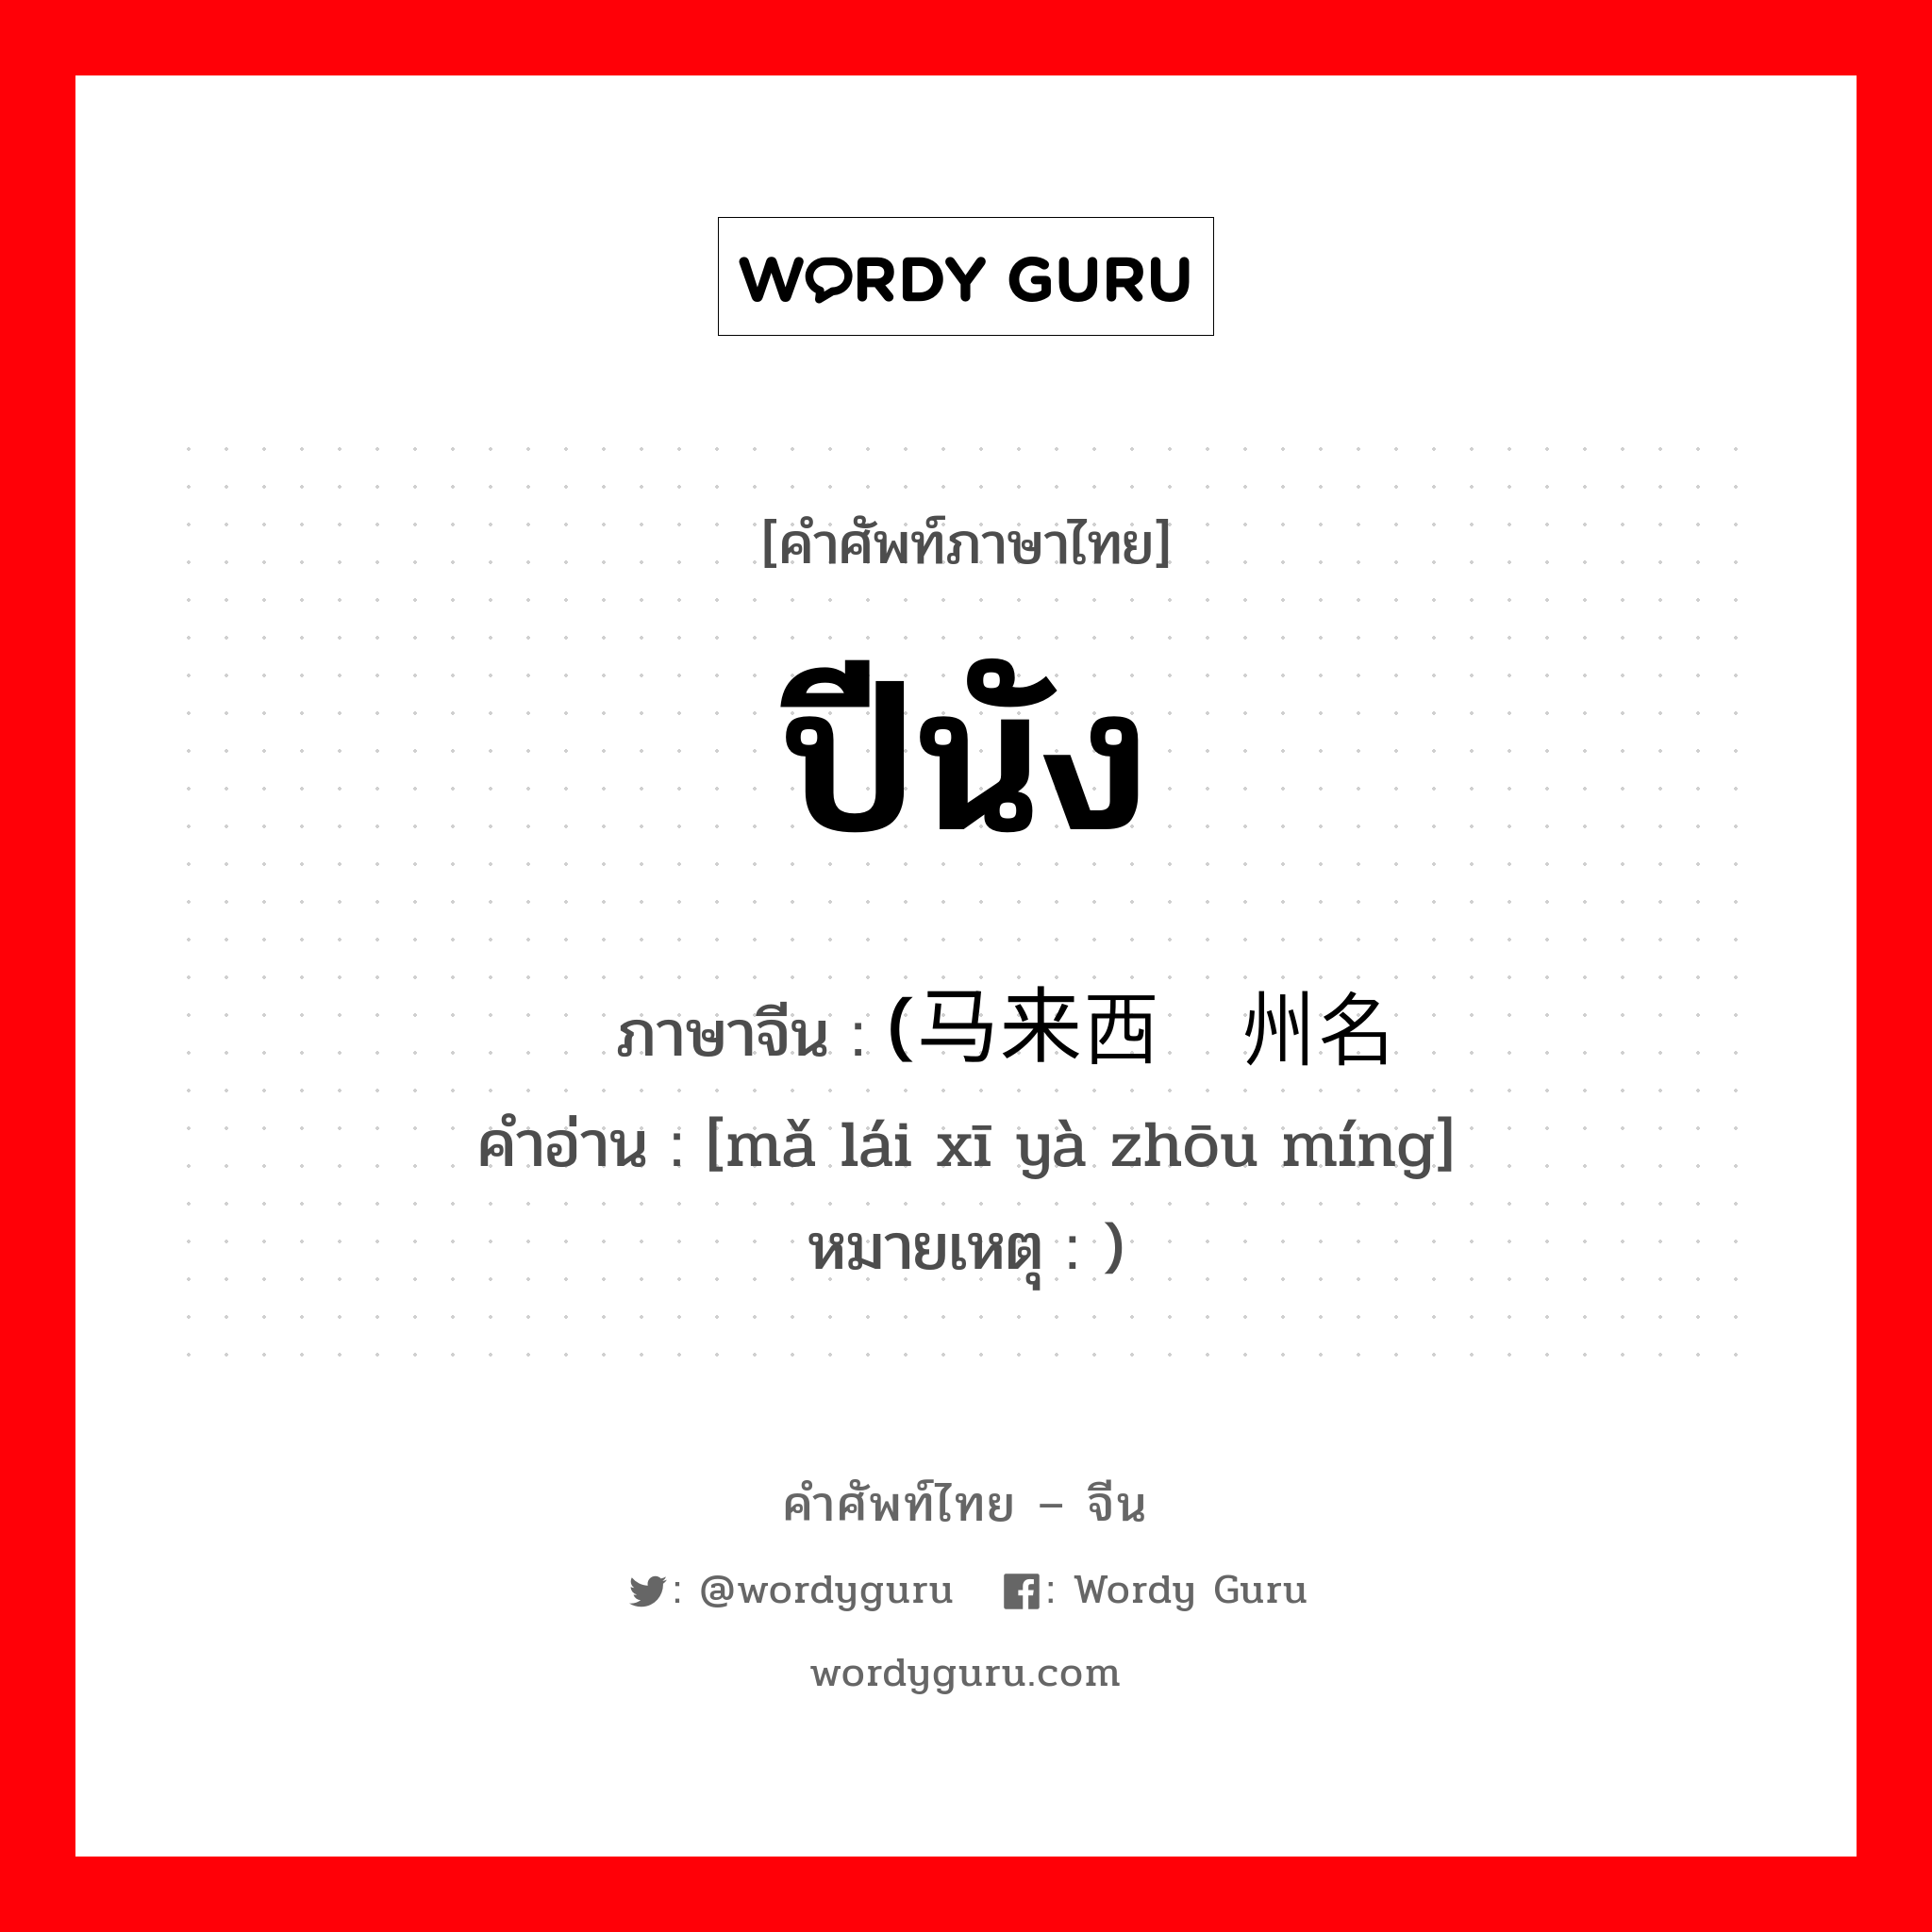 ปีนัง ภาษาจีนคืออะไร, คำศัพท์ภาษาไทย - จีน ปีนัง ภาษาจีน (马来西亚州名 คำอ่าน [mǎ lái xī yà zhōu míng] หมายเหตุ )